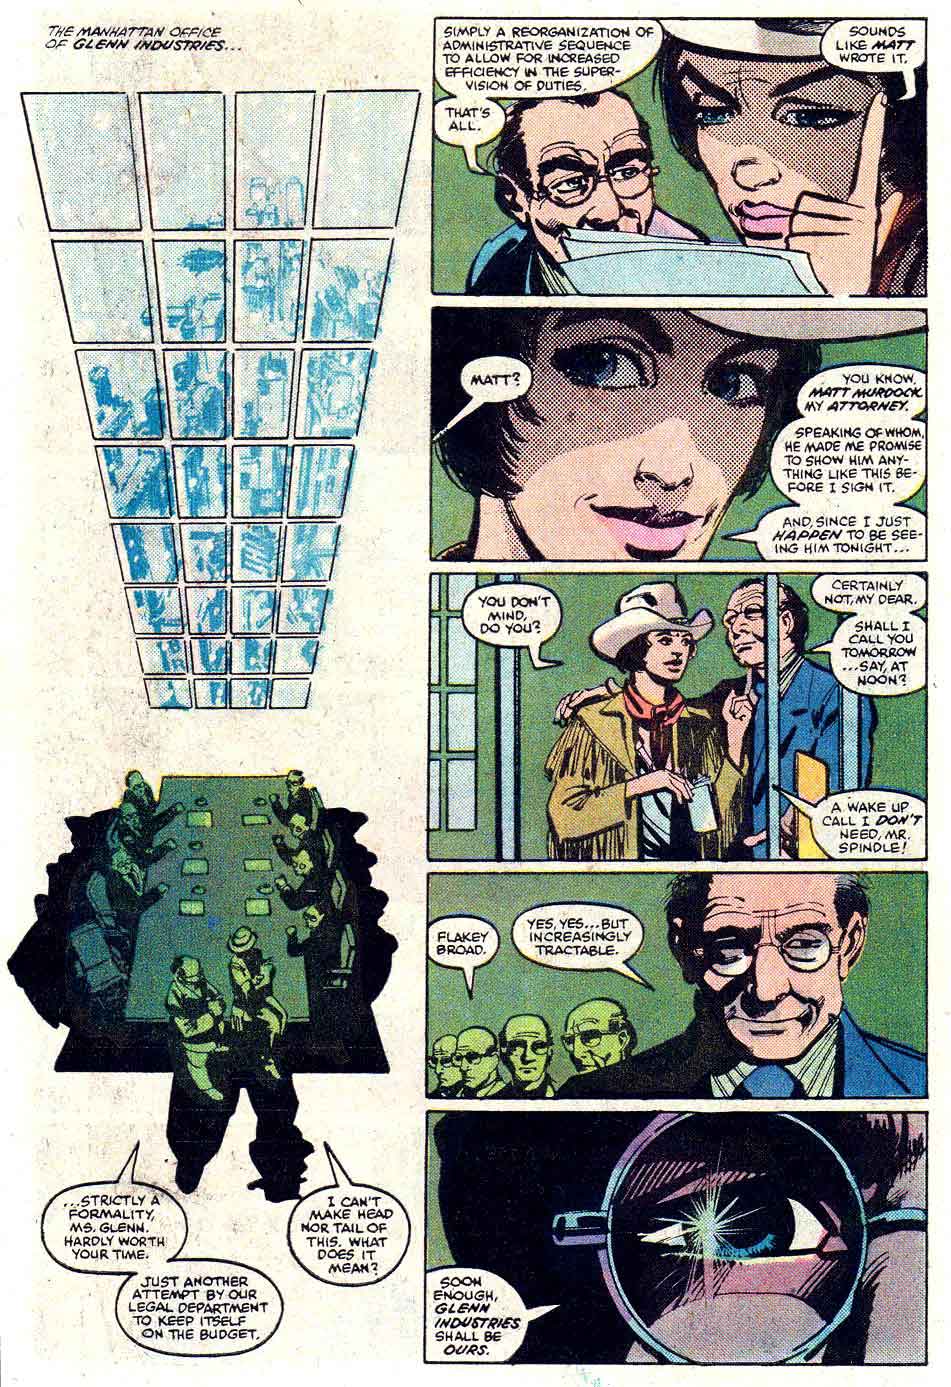 Daredevil v1 #182 marvel comic book page art by Frank Miller